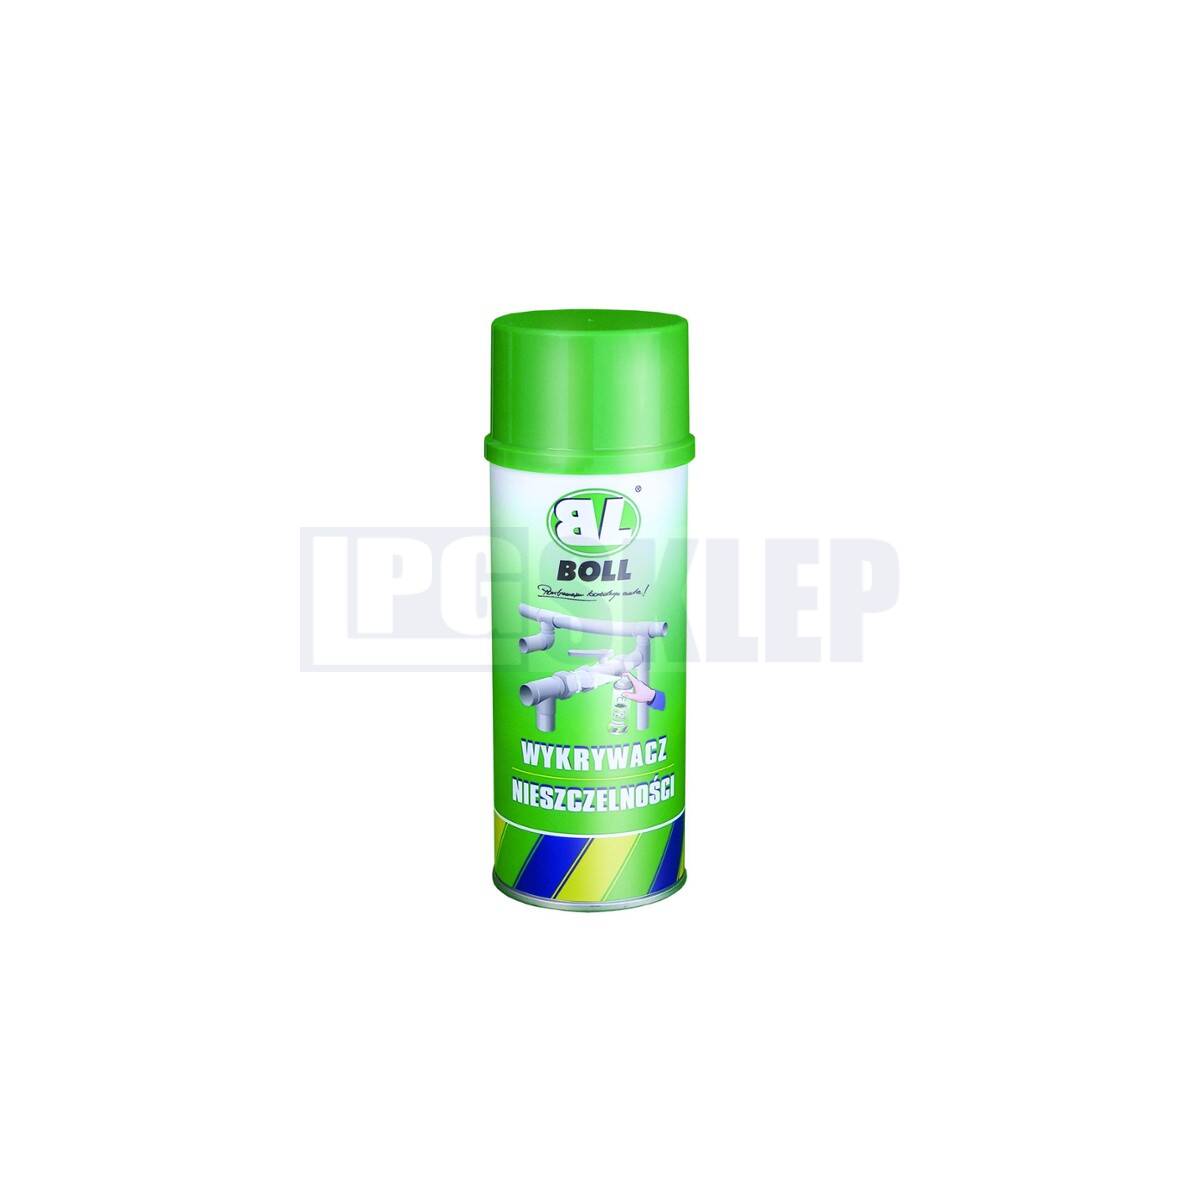 BOLL tester szczelności - spray 300 ml (Foto 1)